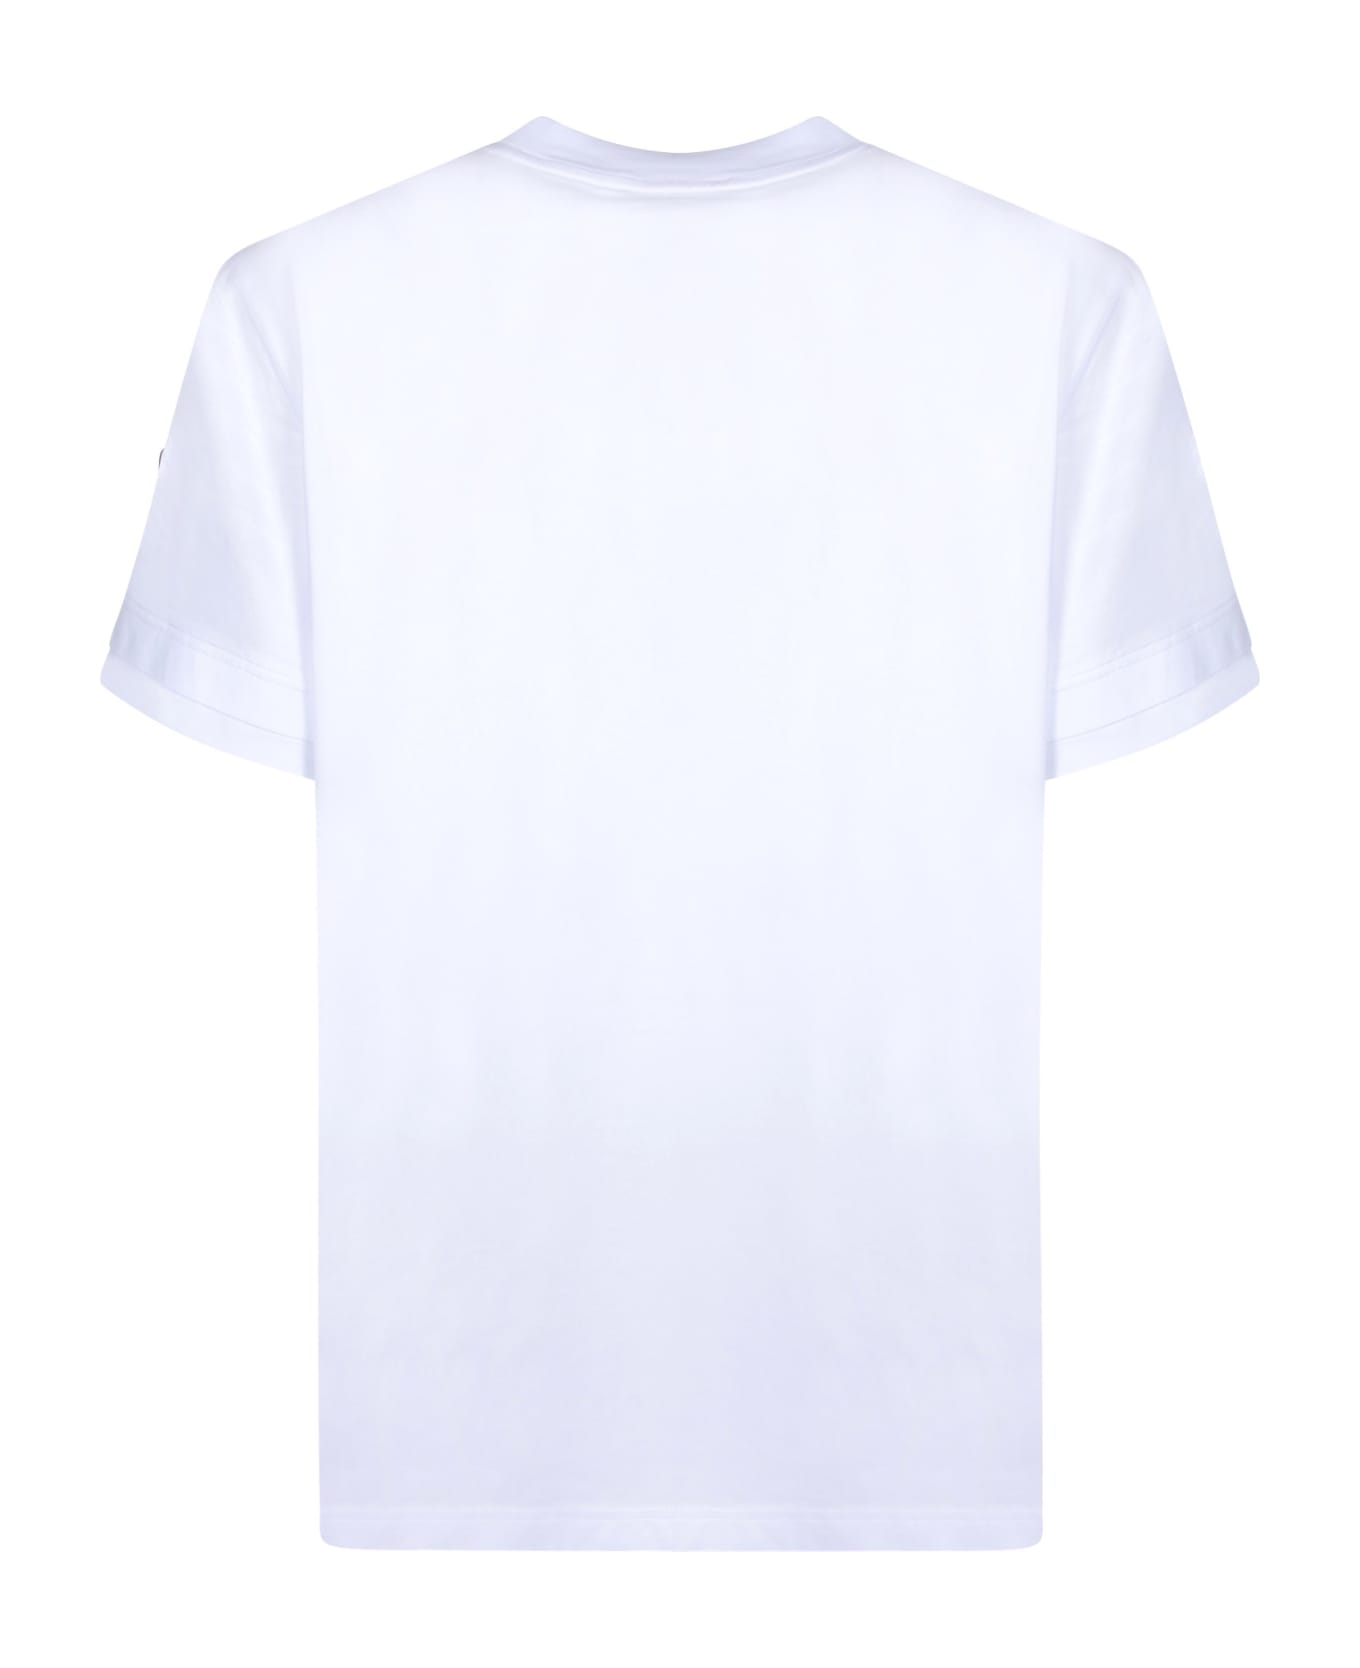 Moncler Powder Effect White Logo T-shirt - White